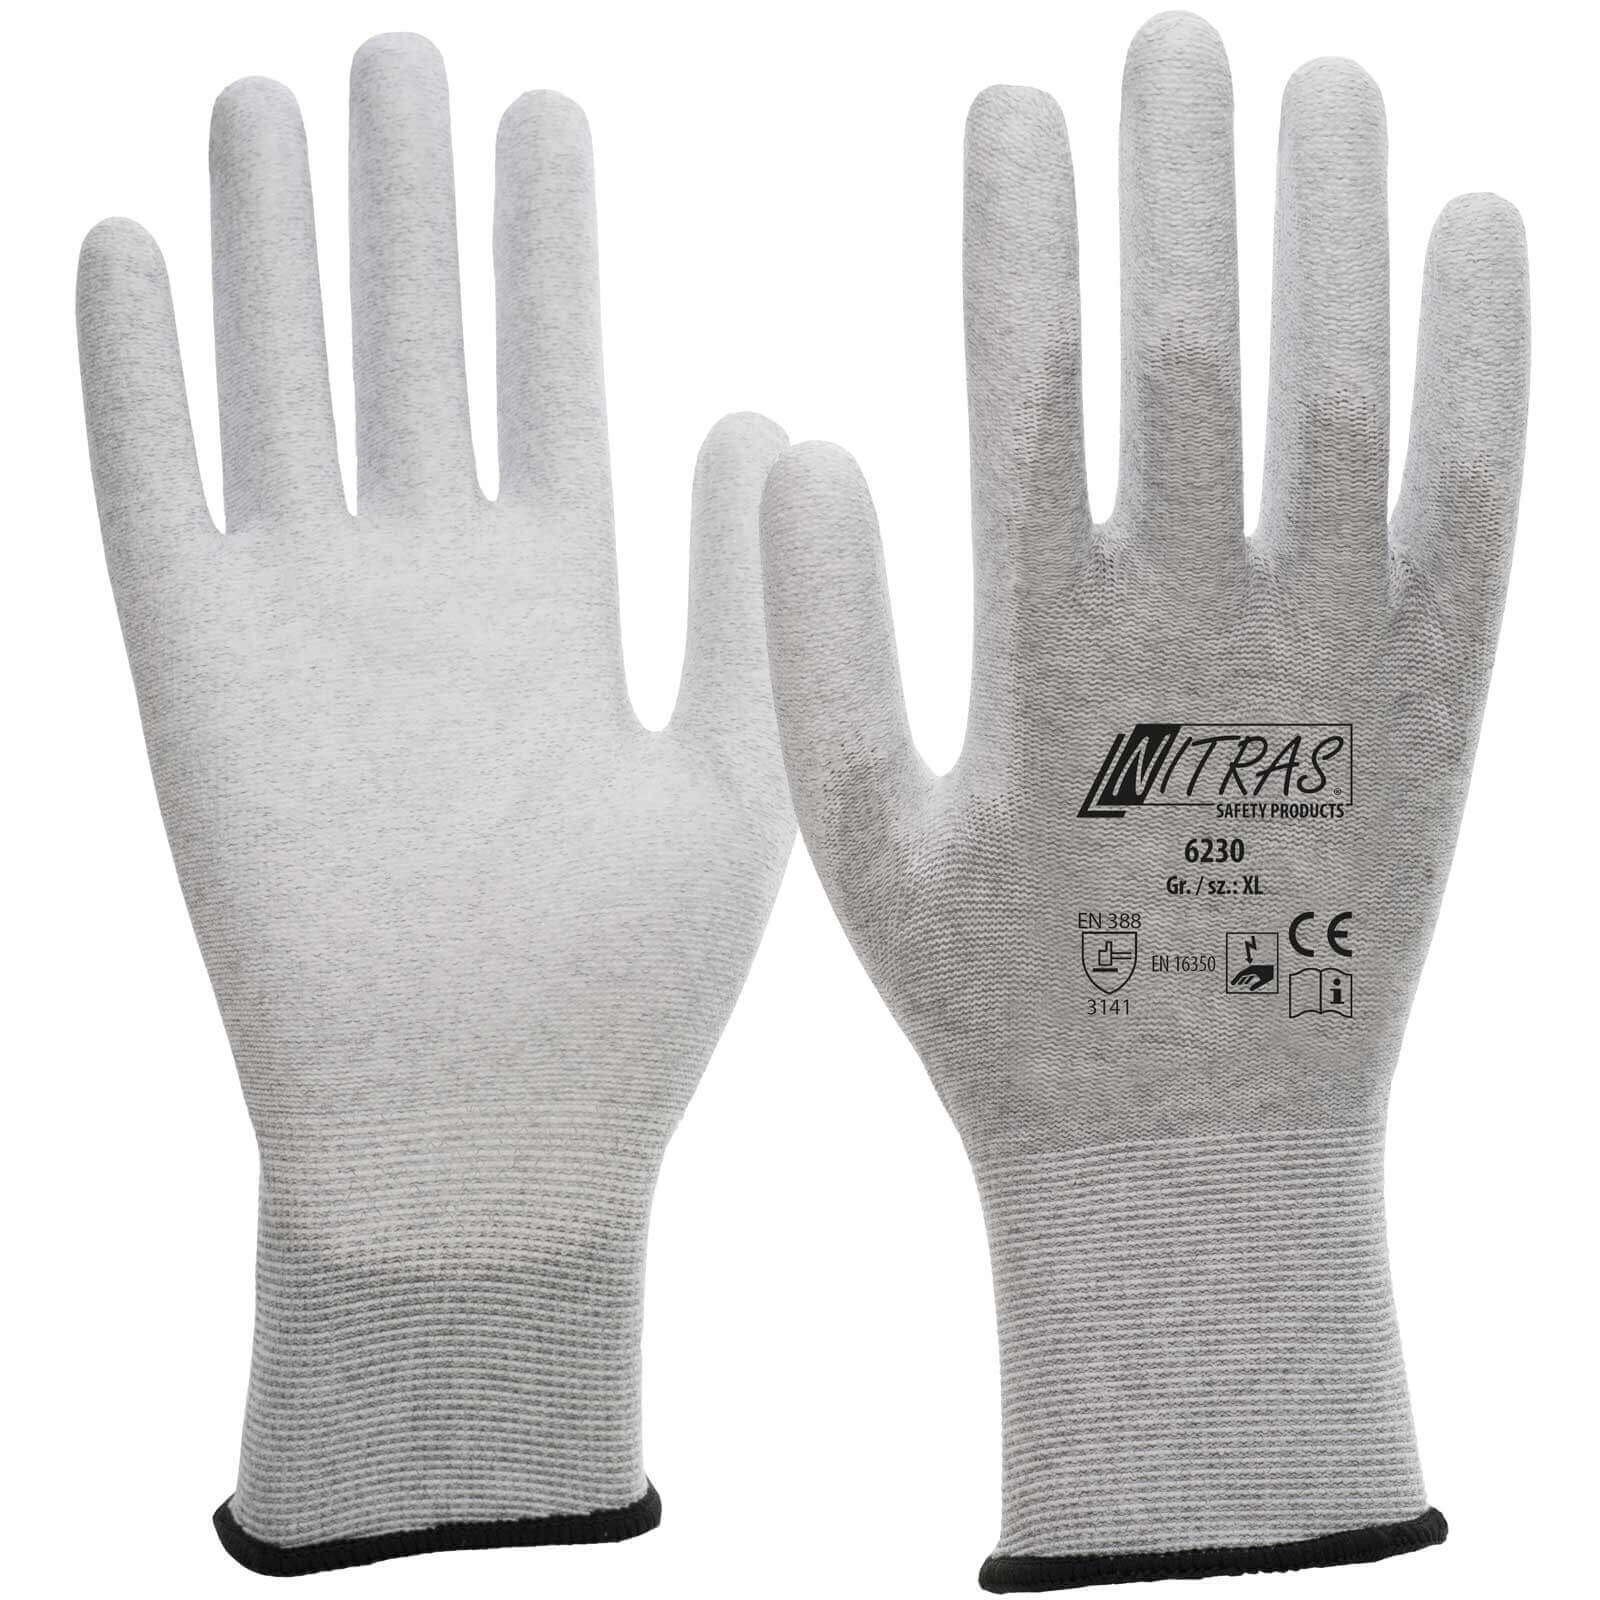 Nitras Mechaniker-Handschuhe NITRAS 6230 ESD-Schutzhandschuhe - Touchscreen-fähig - VPE 240 Paar (Spar-Set)